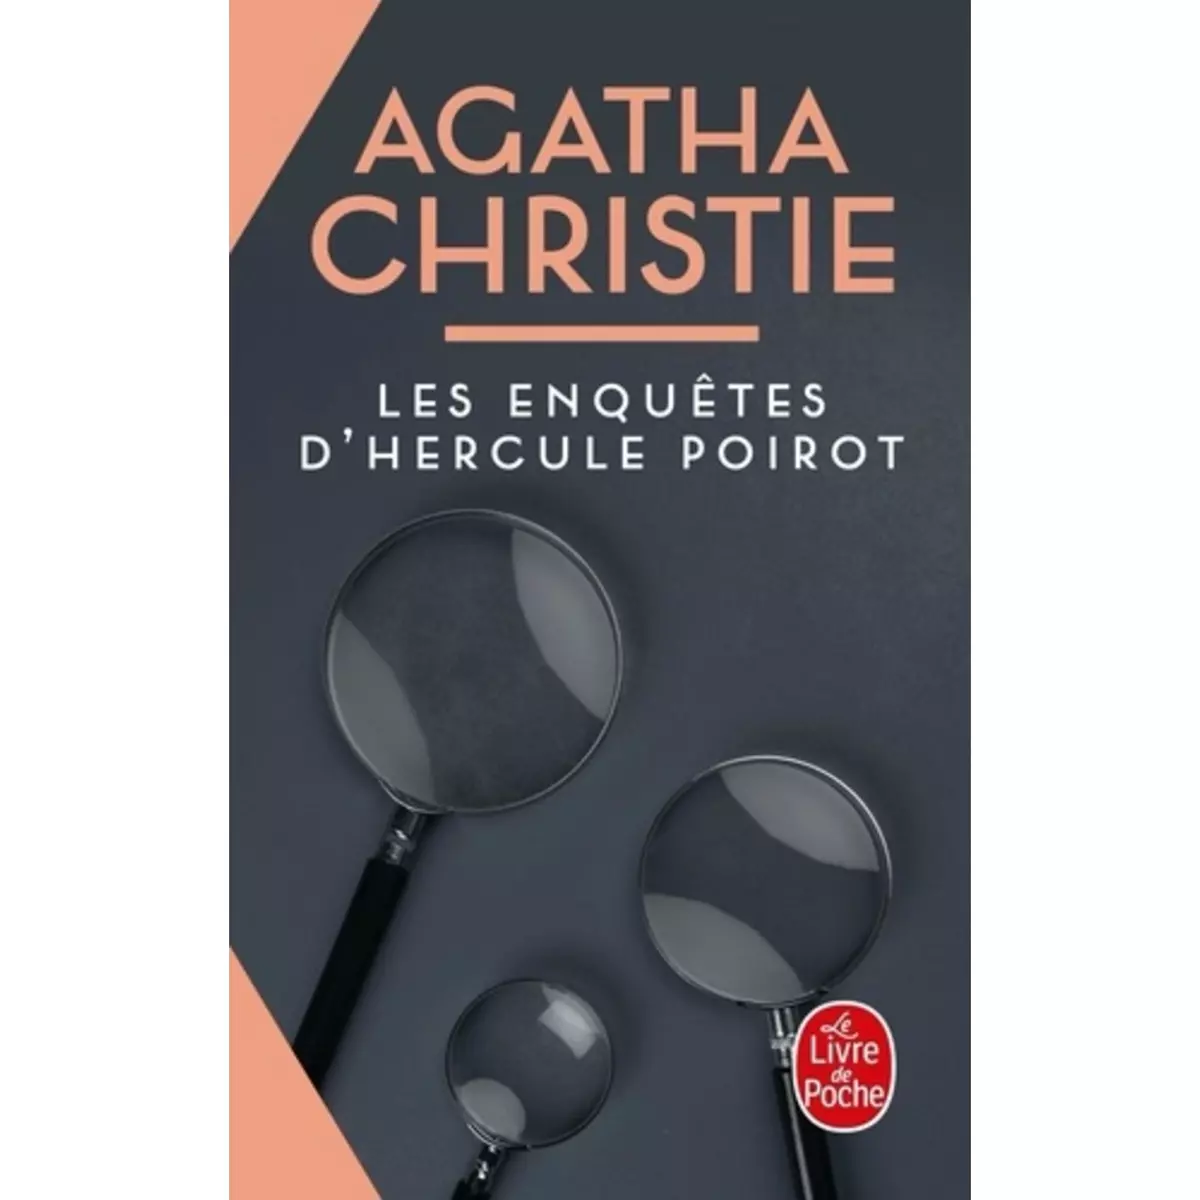  LES ENQUETES D'HERCULE POIROT, Christie Agatha